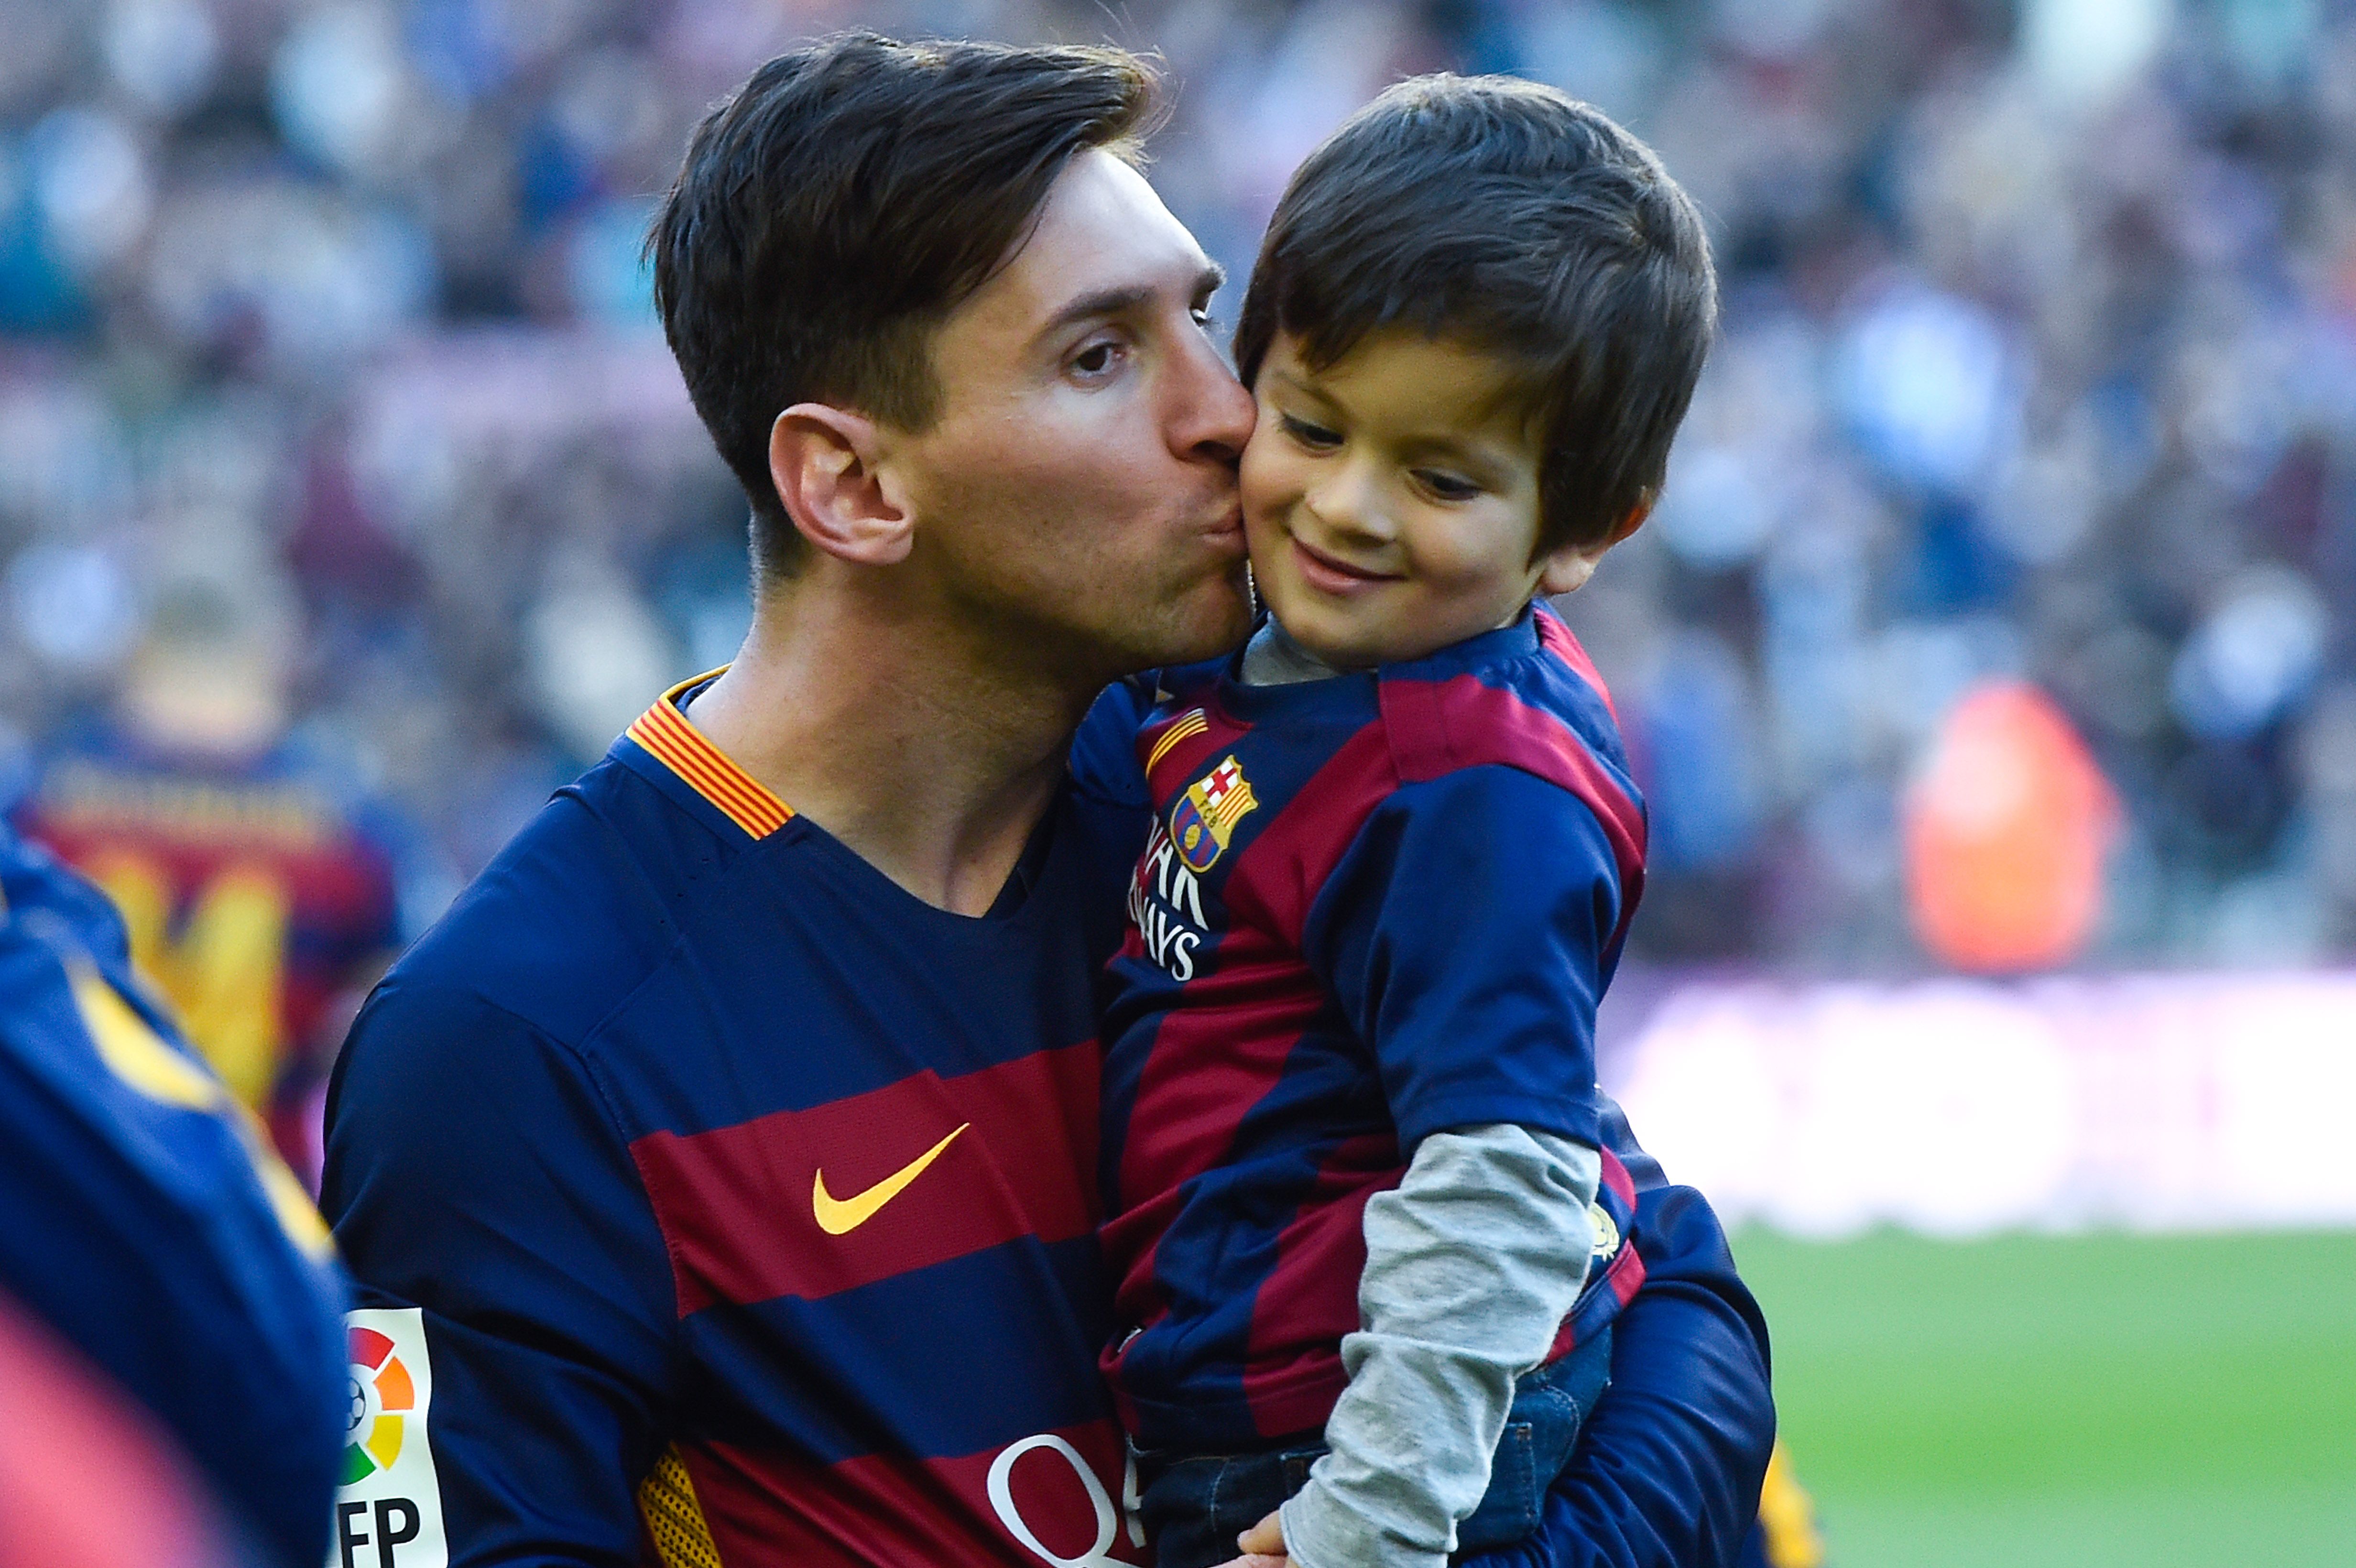 Ellos son los jugadores favoritos de Thiago, el hijo mayor de Messi